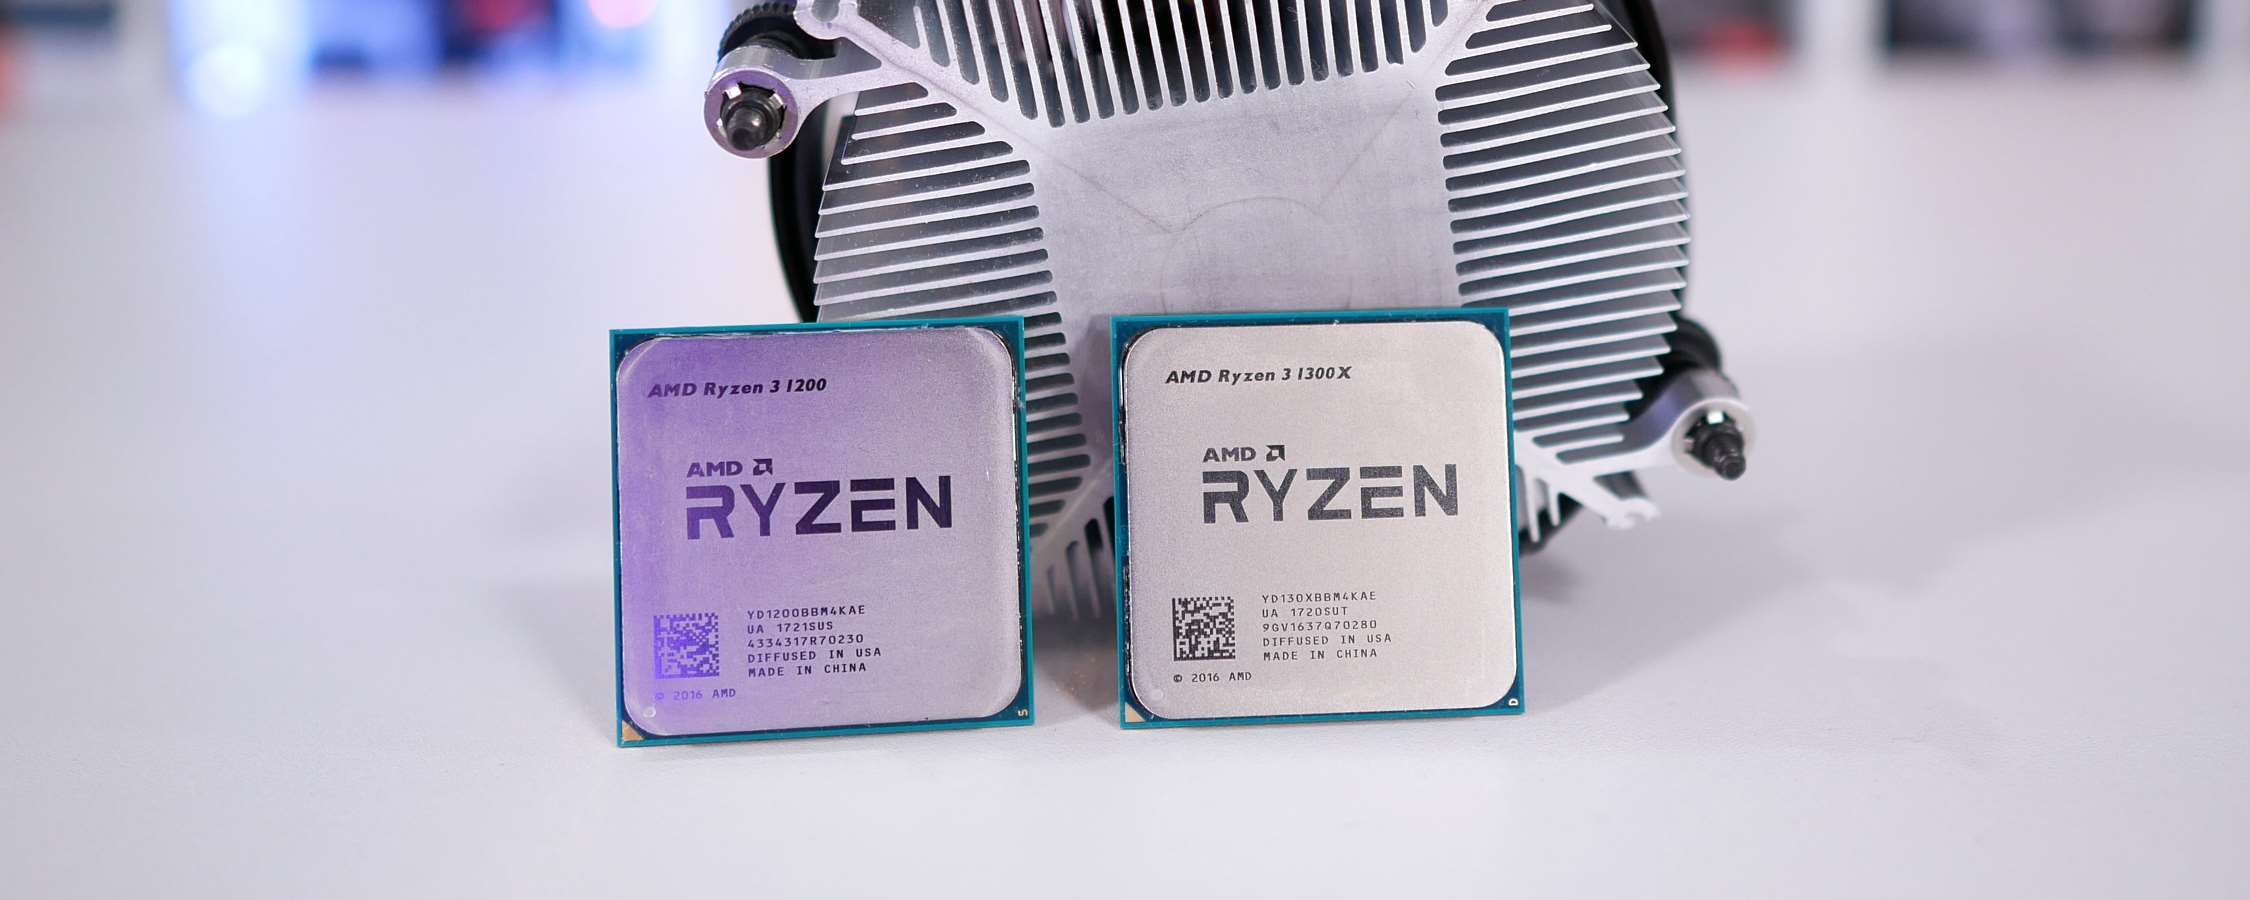 مراجعة AMD Ryzen 3 - TechSpot 72